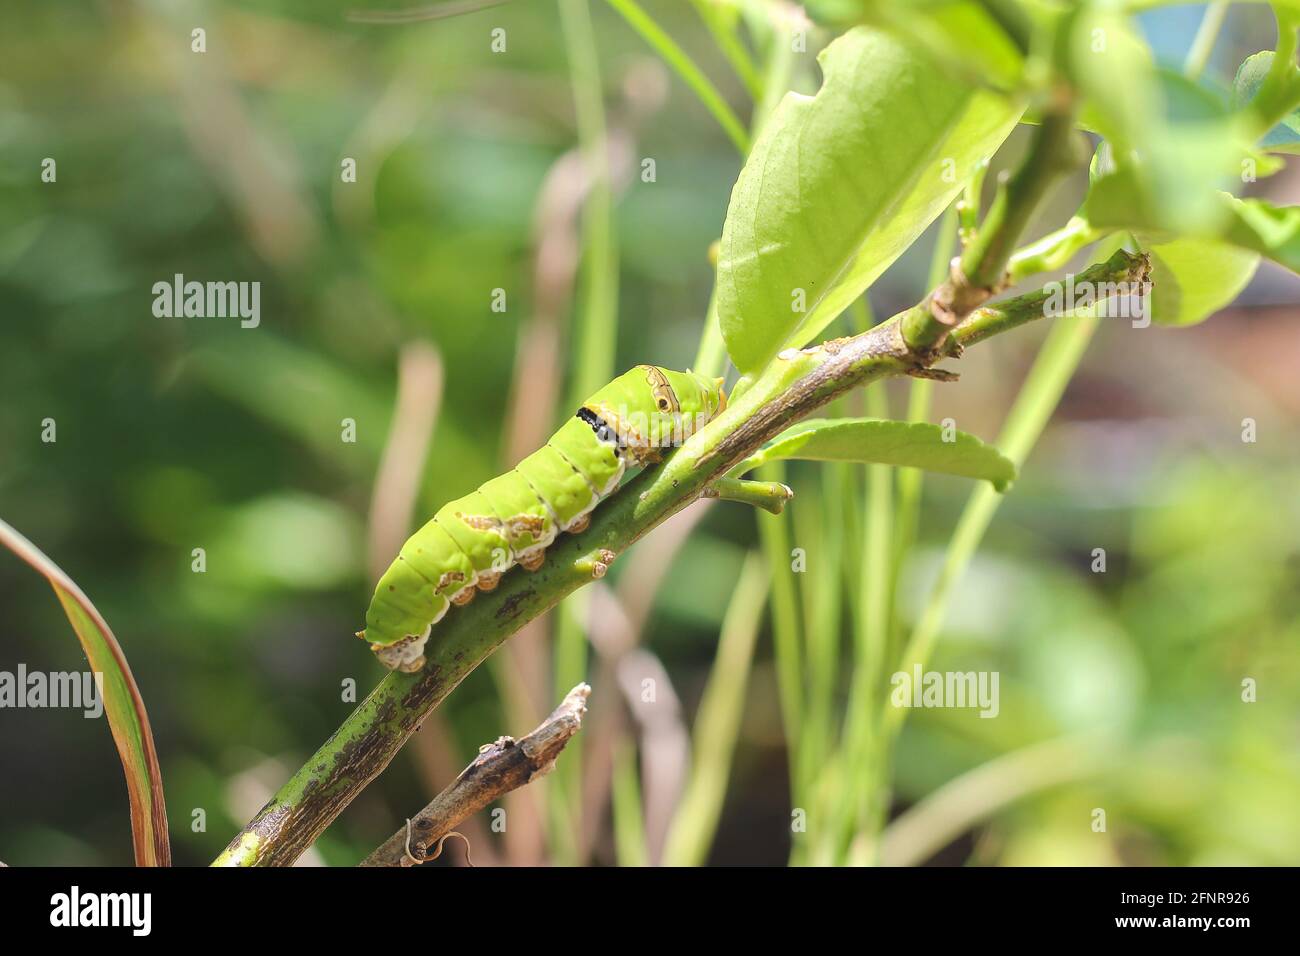 Raupen auf Blättern mit verschwommenem Hintergrund. Nahaufnahme der schönen grünen Raupe. Eine schöne Raupe kriecht auf einem großen grünen Blatt. Stockfoto